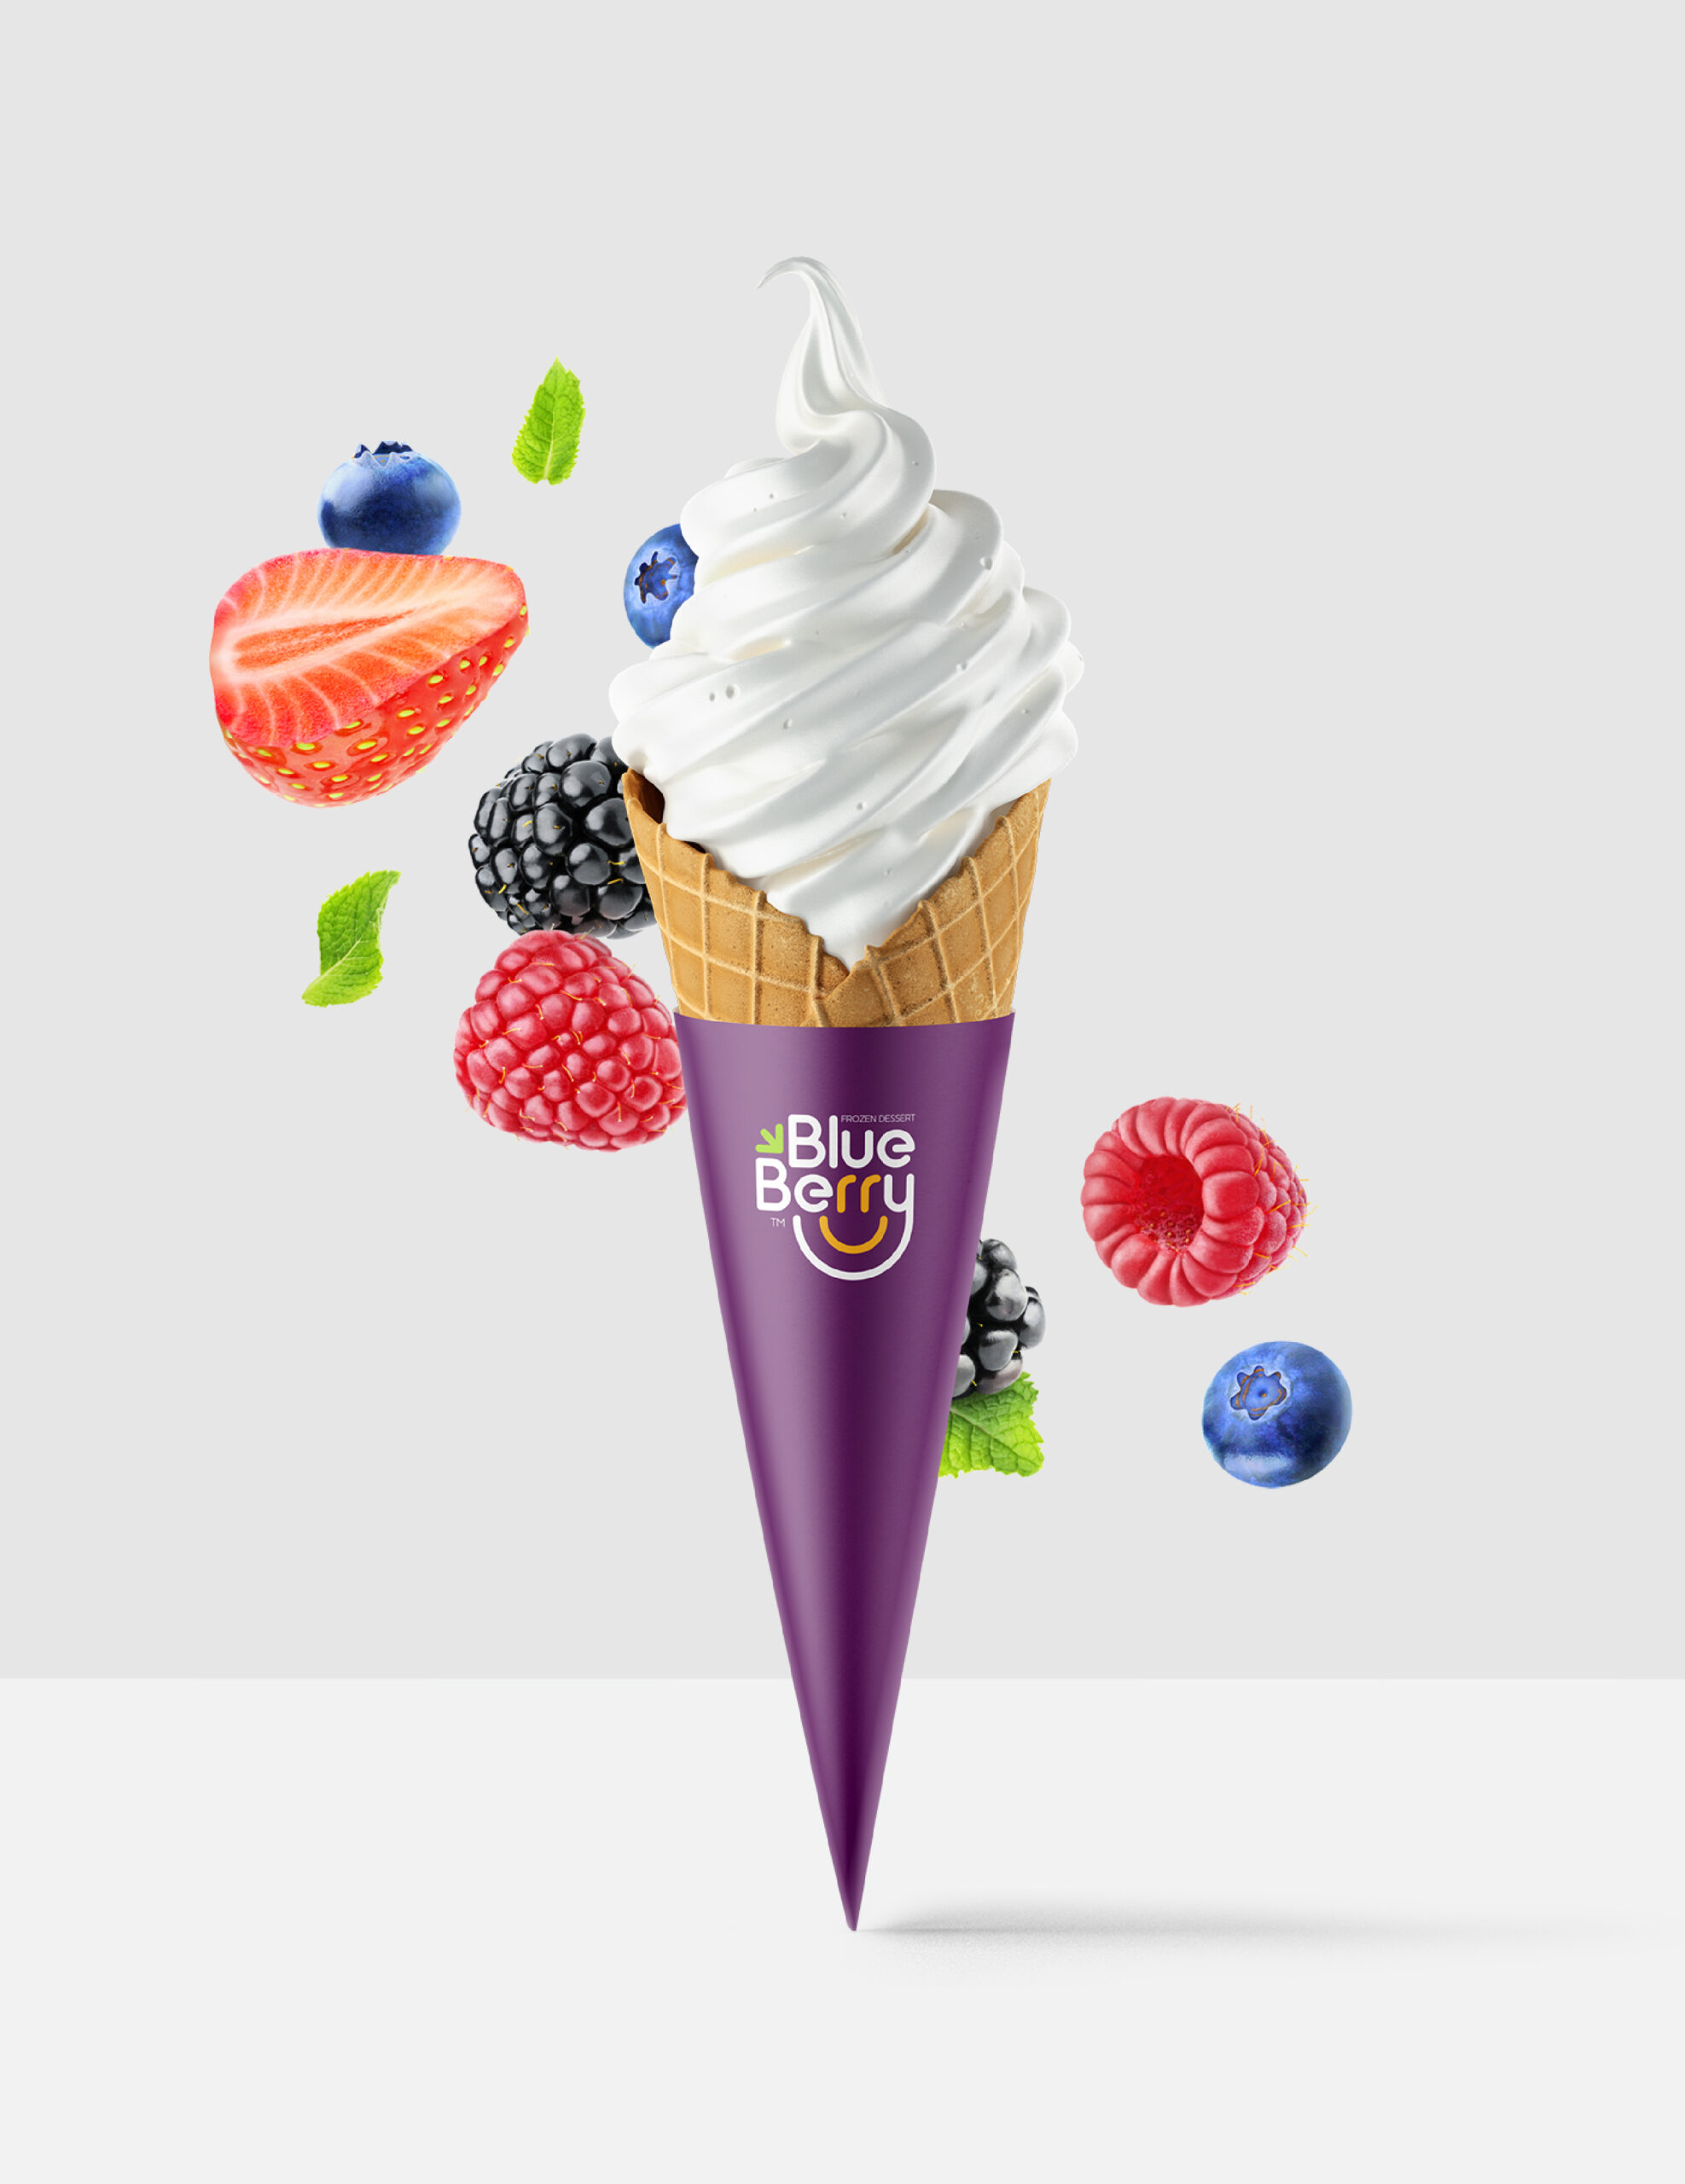 Blueberry-Frozen-Dessert-Branding-By-Millimeter-Creative-Agency-Cover-M06